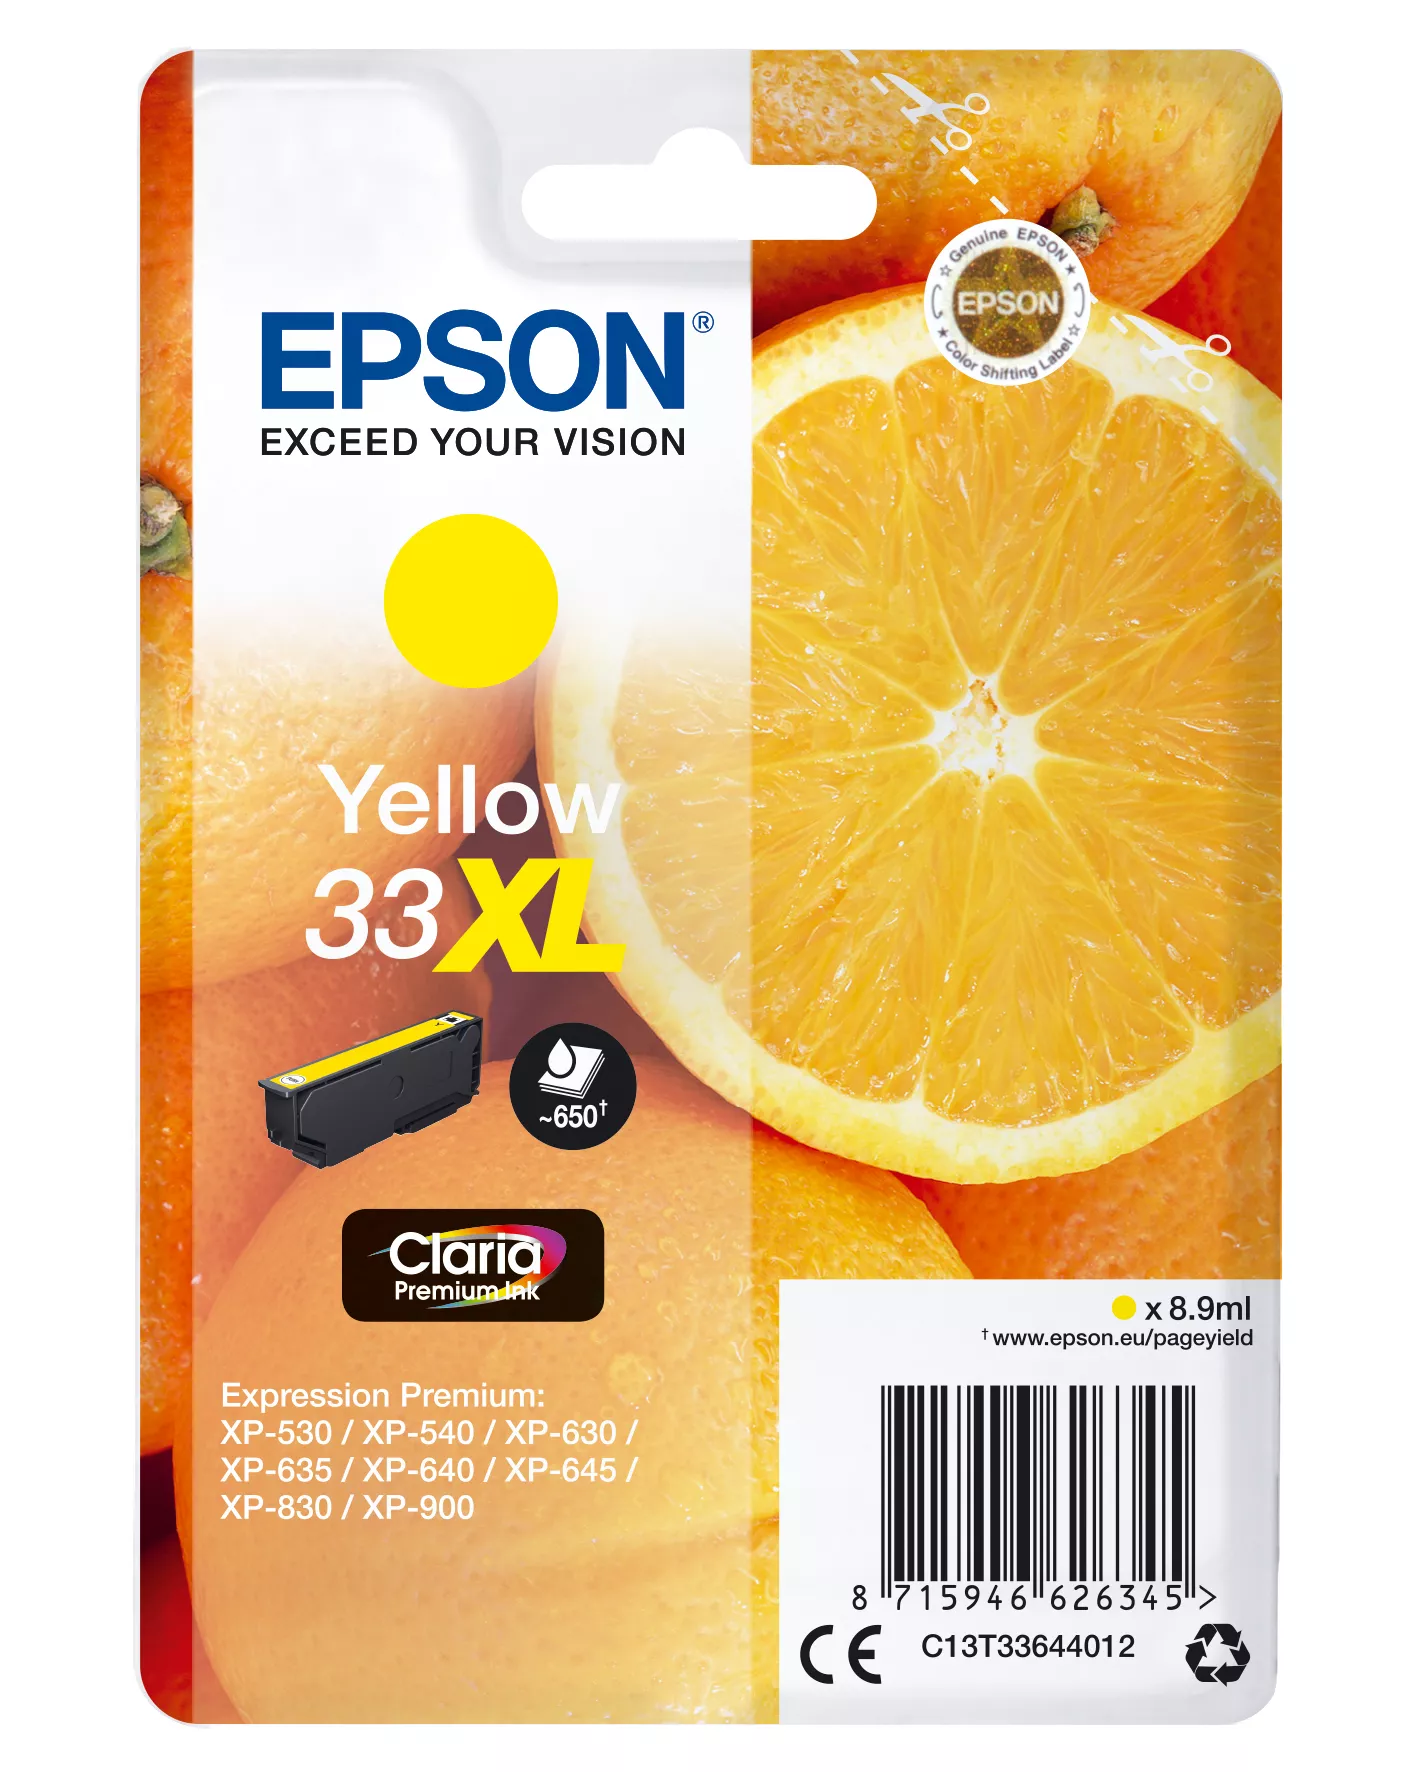 Vente EPSON Cartouche Oranges Encre Claria Premium Jaune XL au meilleur prix